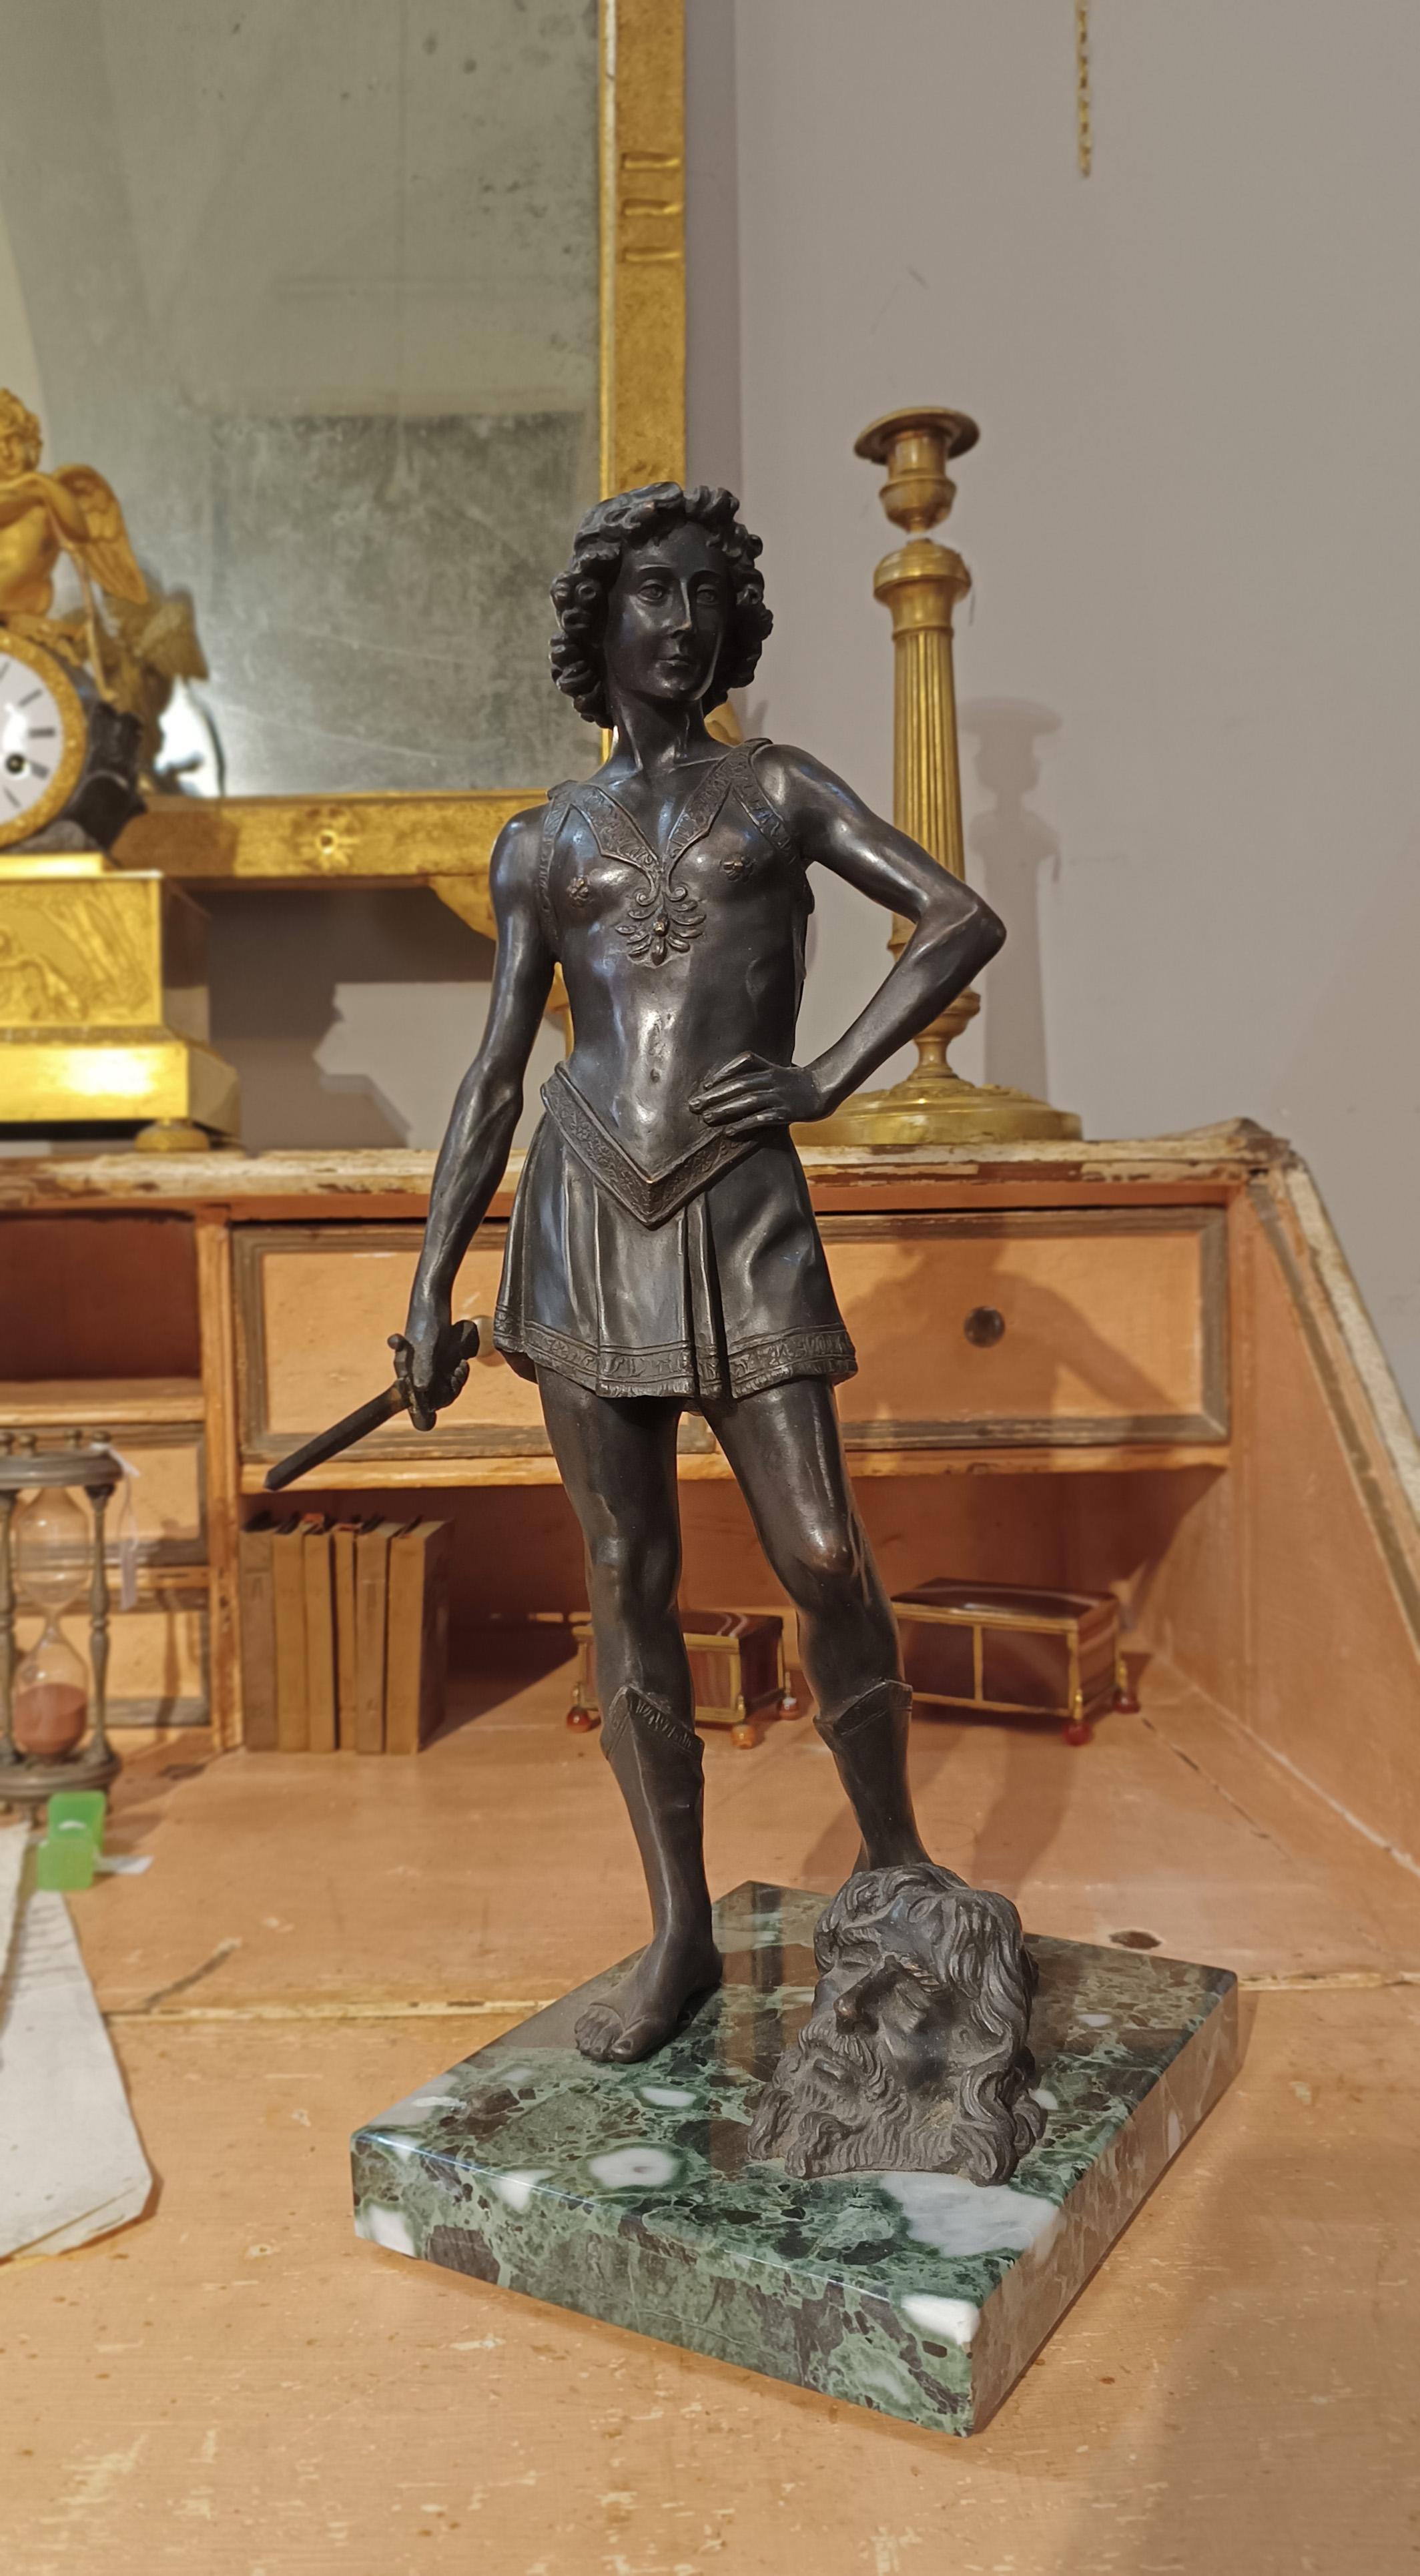 Schöne, im Wachsausschmelzverfahren gegossene Bronzeskulptur, die den jungen David mit erhobenem Schwert darstellt, Symbol seines Sieges über den Riesen Goliath, dessen leidendes Haupt auf dem Sockel aus grünem Marmor abgebildet ist. Mit siegreicher